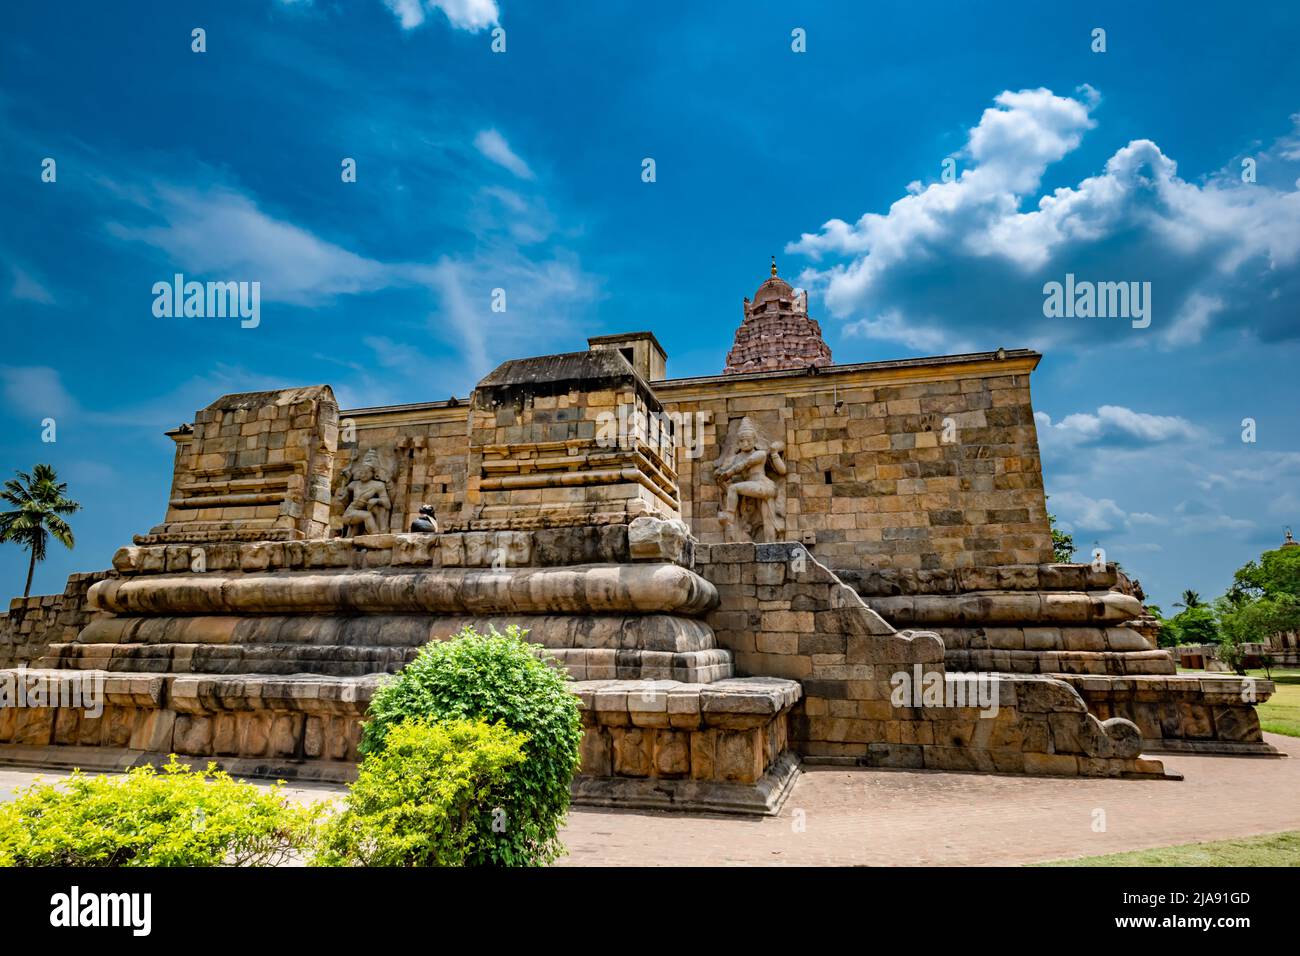 Indischer Tempel. Große hinduistische Architektur in Gangaikonda Chola Puram Tempel, Südindien. Stockfoto